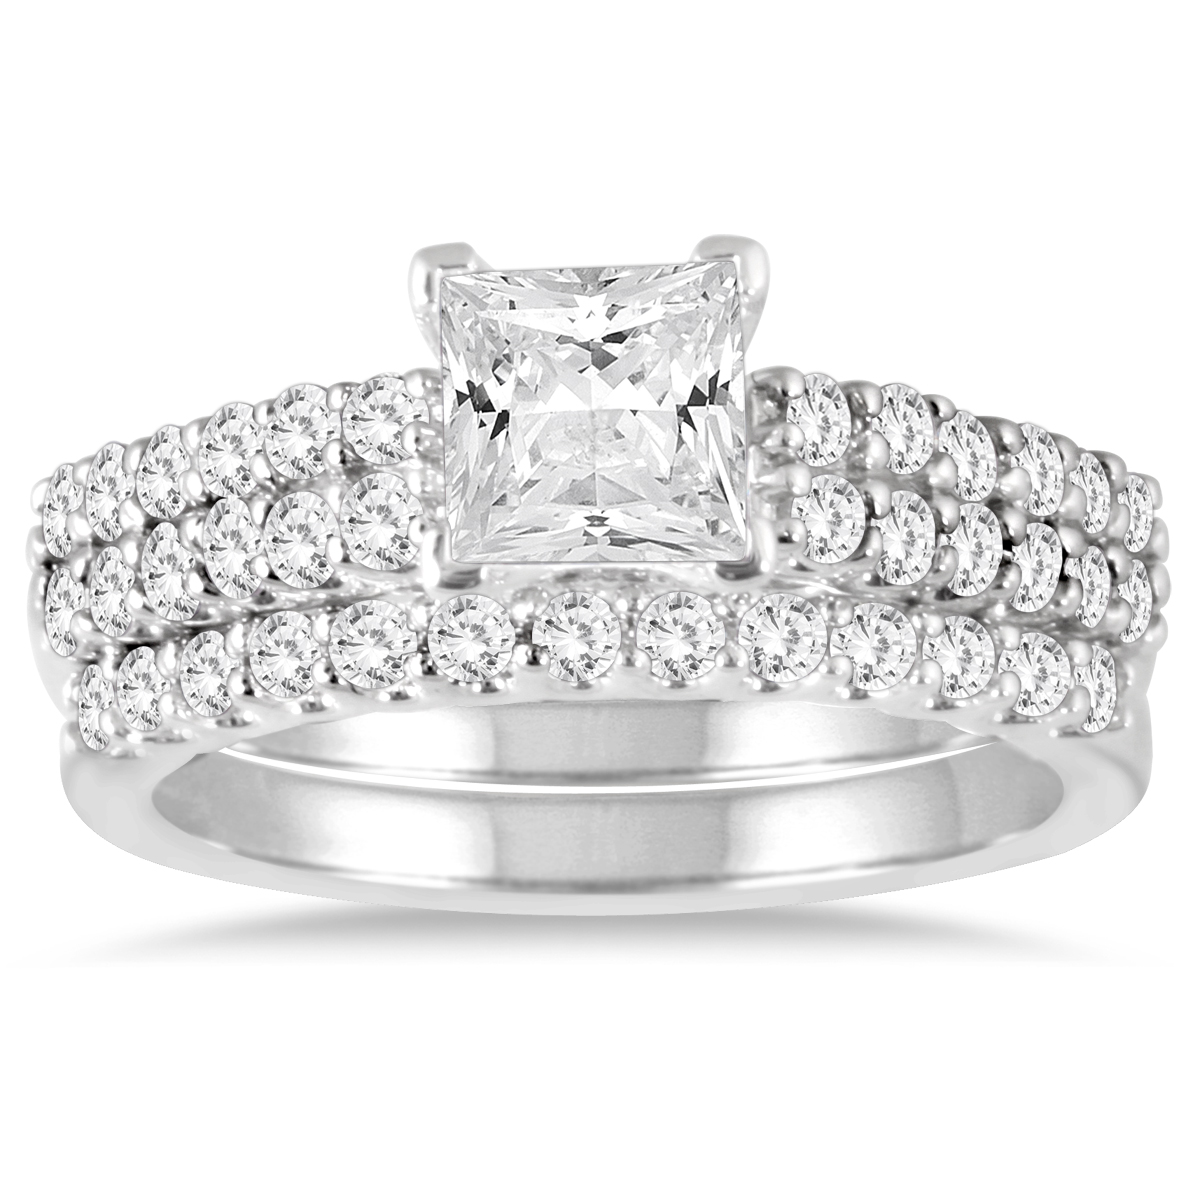 Image of 1 3/4 Carat TW Princess Diamond Bridal Set in 14K White Gold